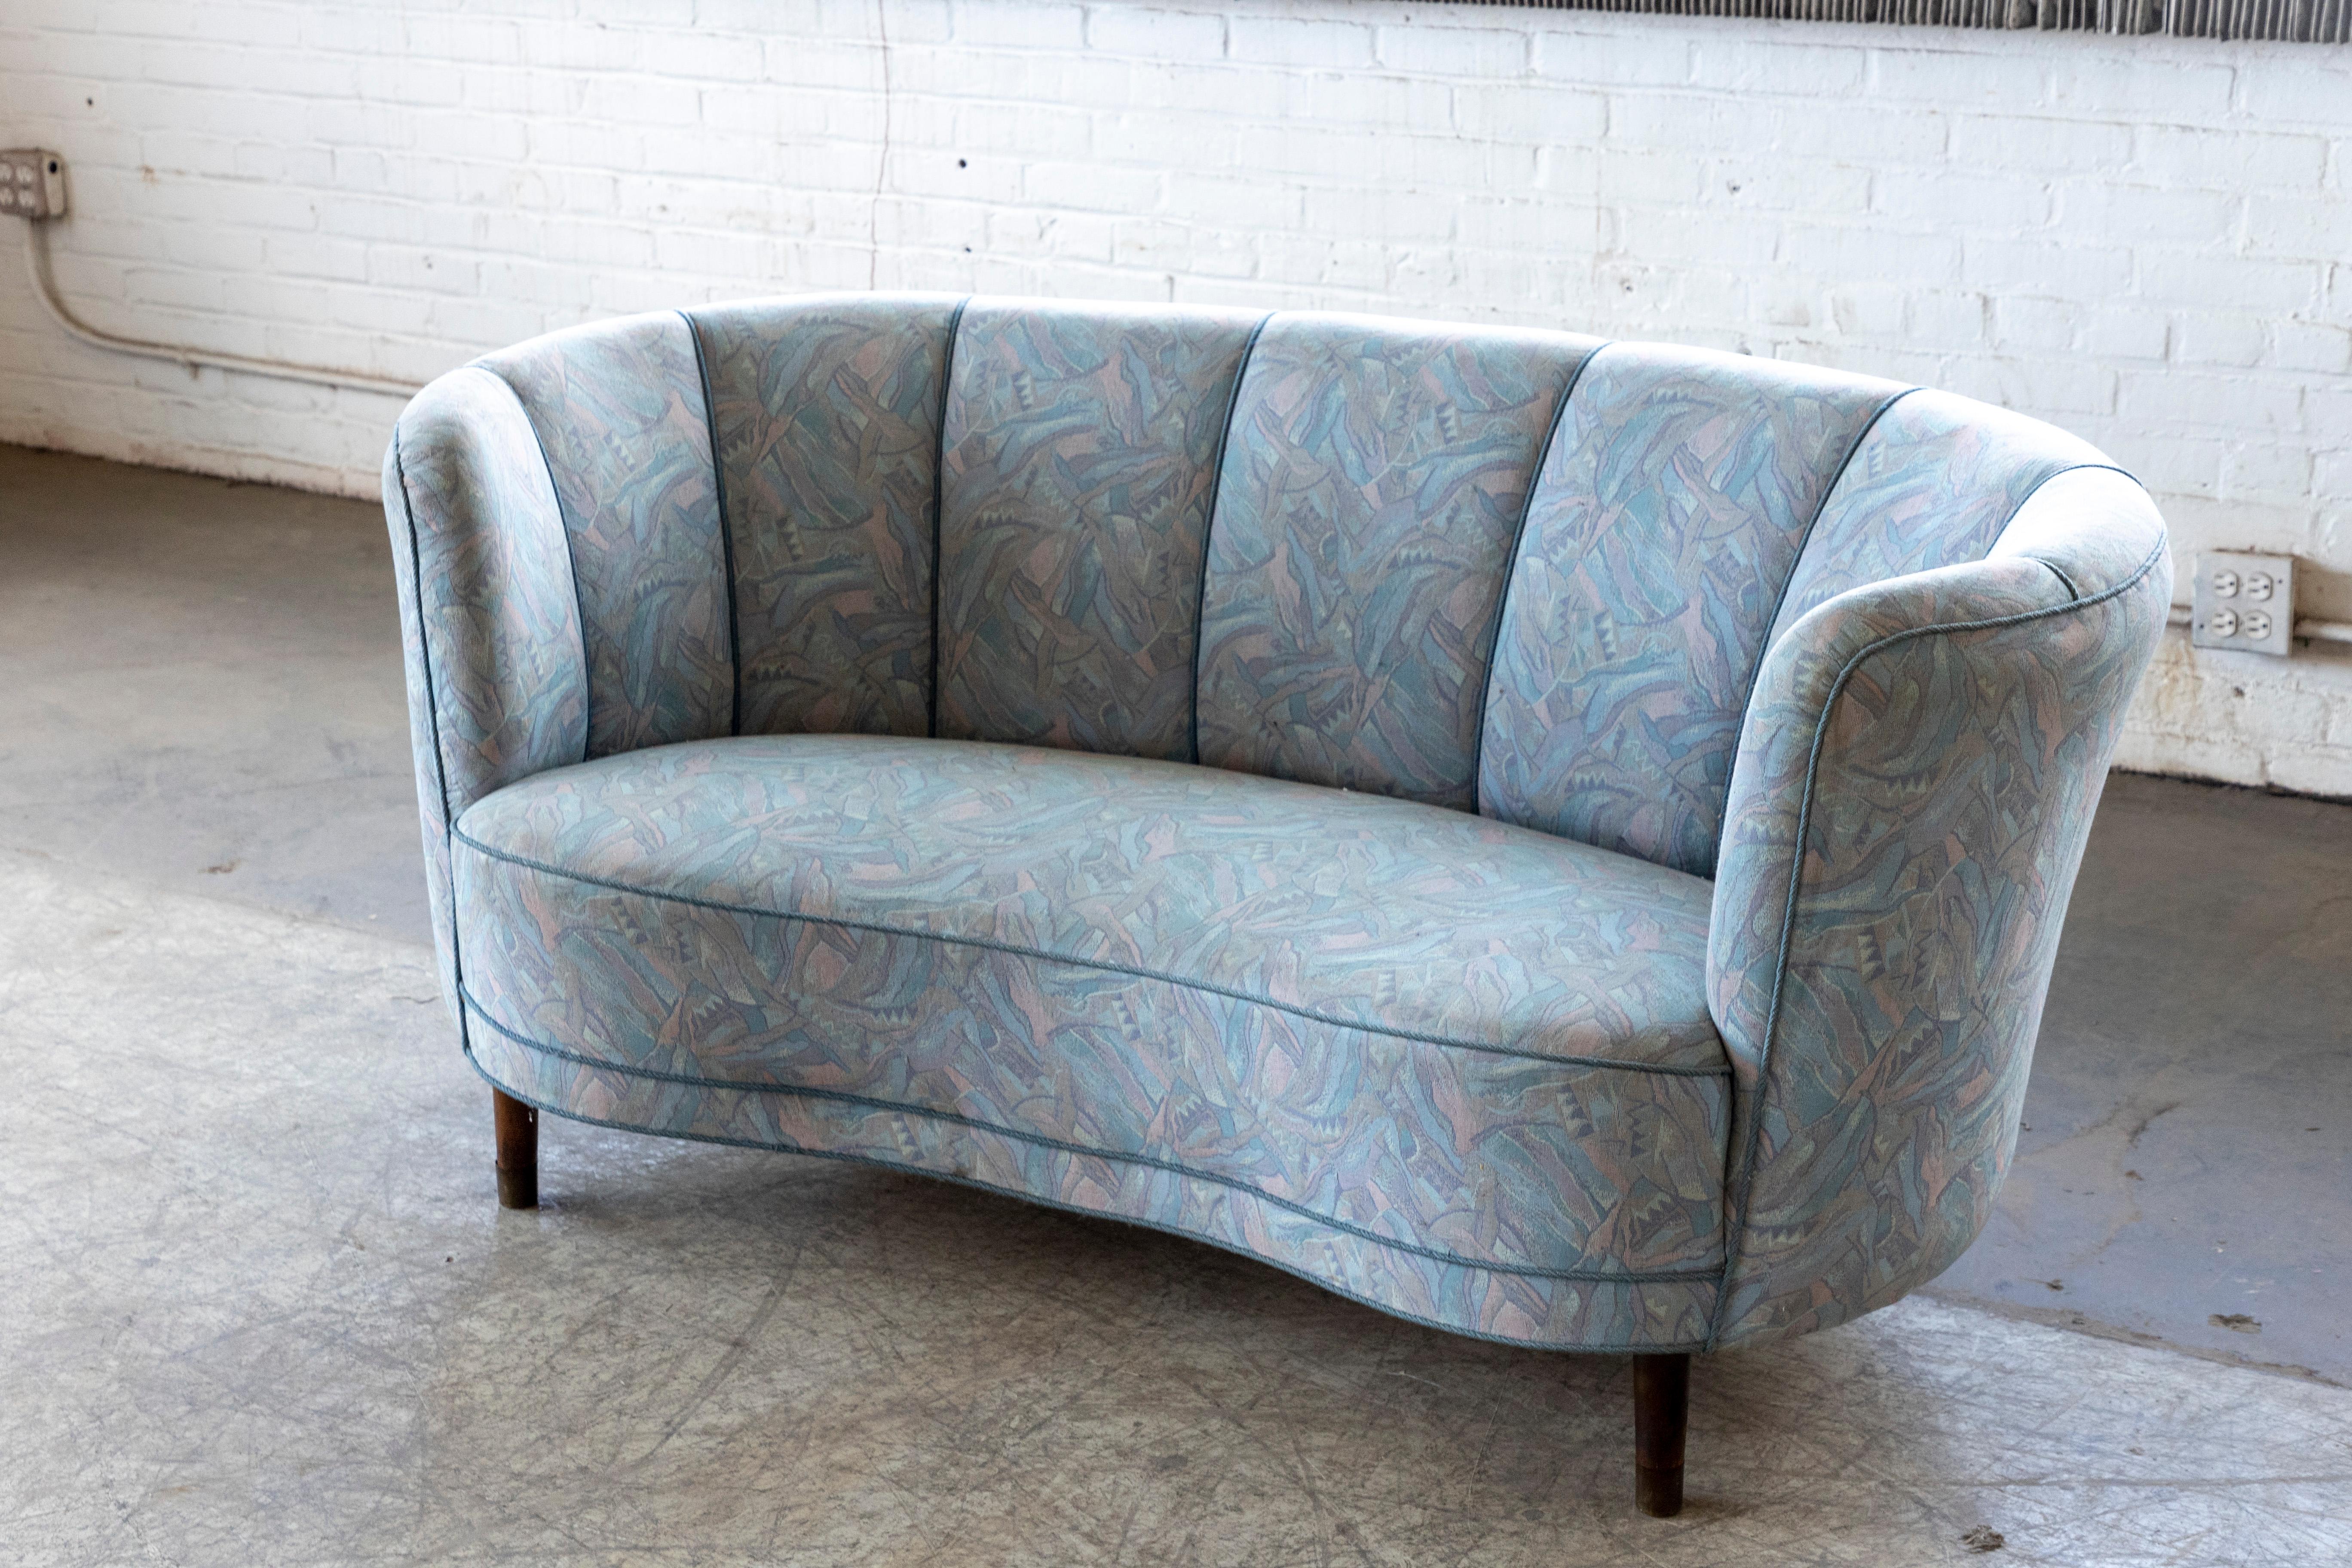 Schönes und sehr elegantes dänisches, geschwungenes Zweisitzer-Sofa auf einem Buchengestell und Beinen. Wahrscheinlich um 1950 hergestellt, auch wenn das ursprüngliche Design aus der späten Art-déco-Ära in den 1930er Jahren stammt. Banana-Sofas, die